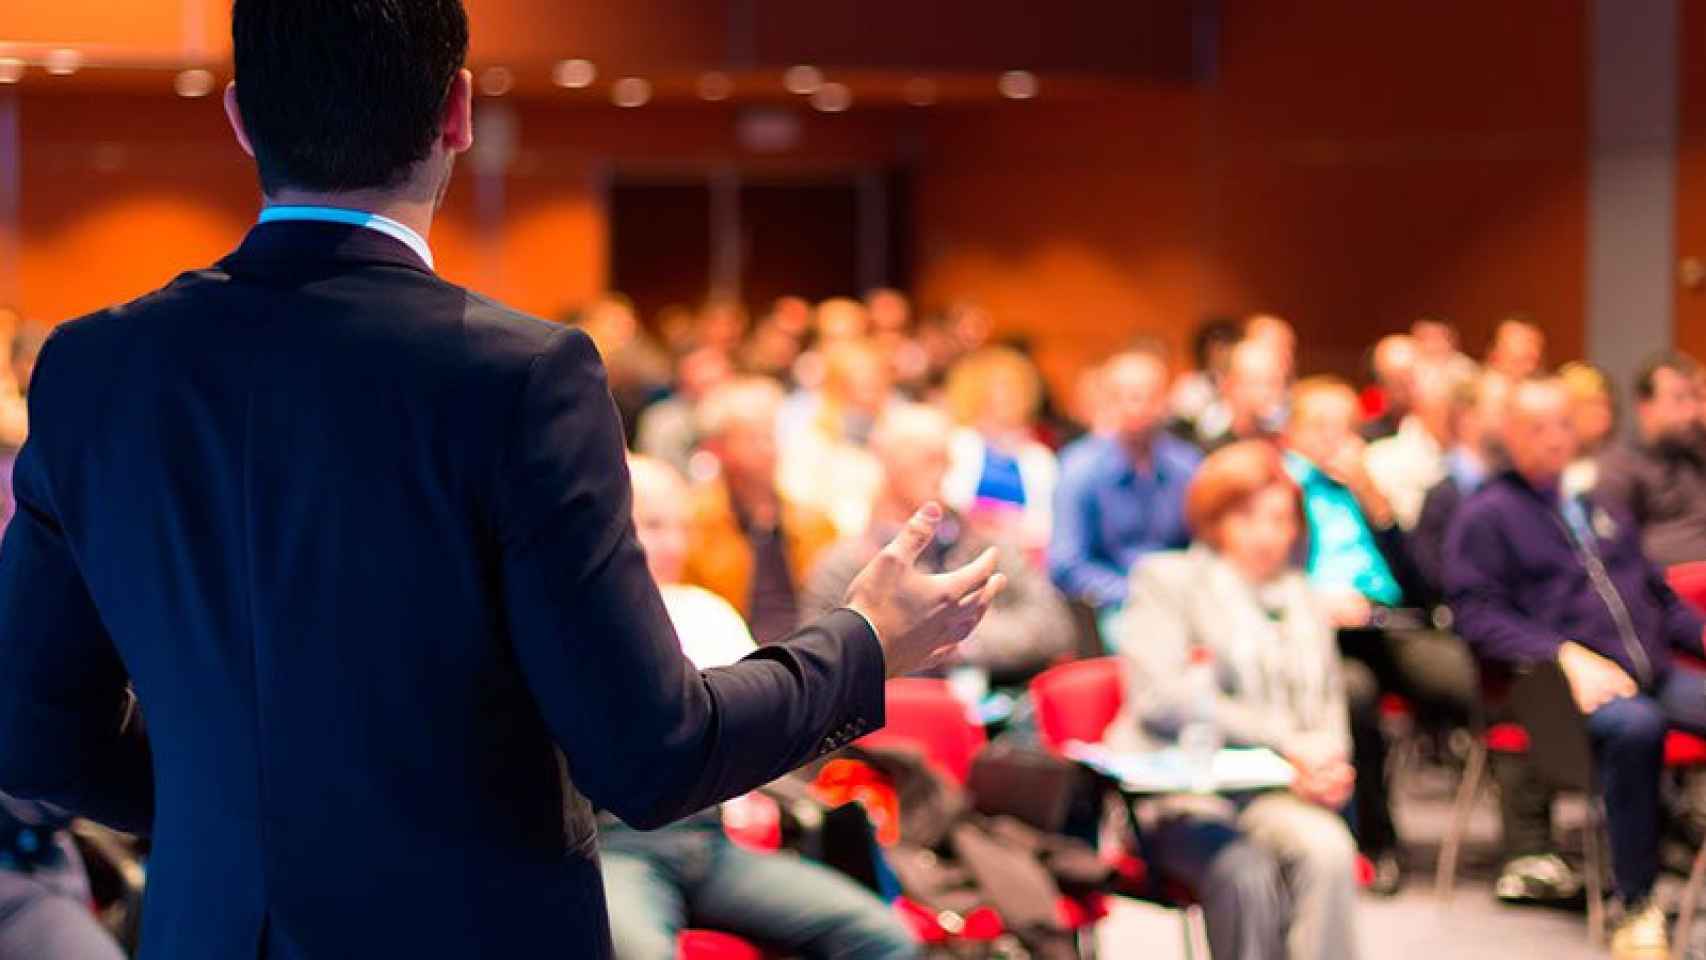 La profesionalización de los conferenciantes es cada vez mayor, sobre todo en Estados Unidos.